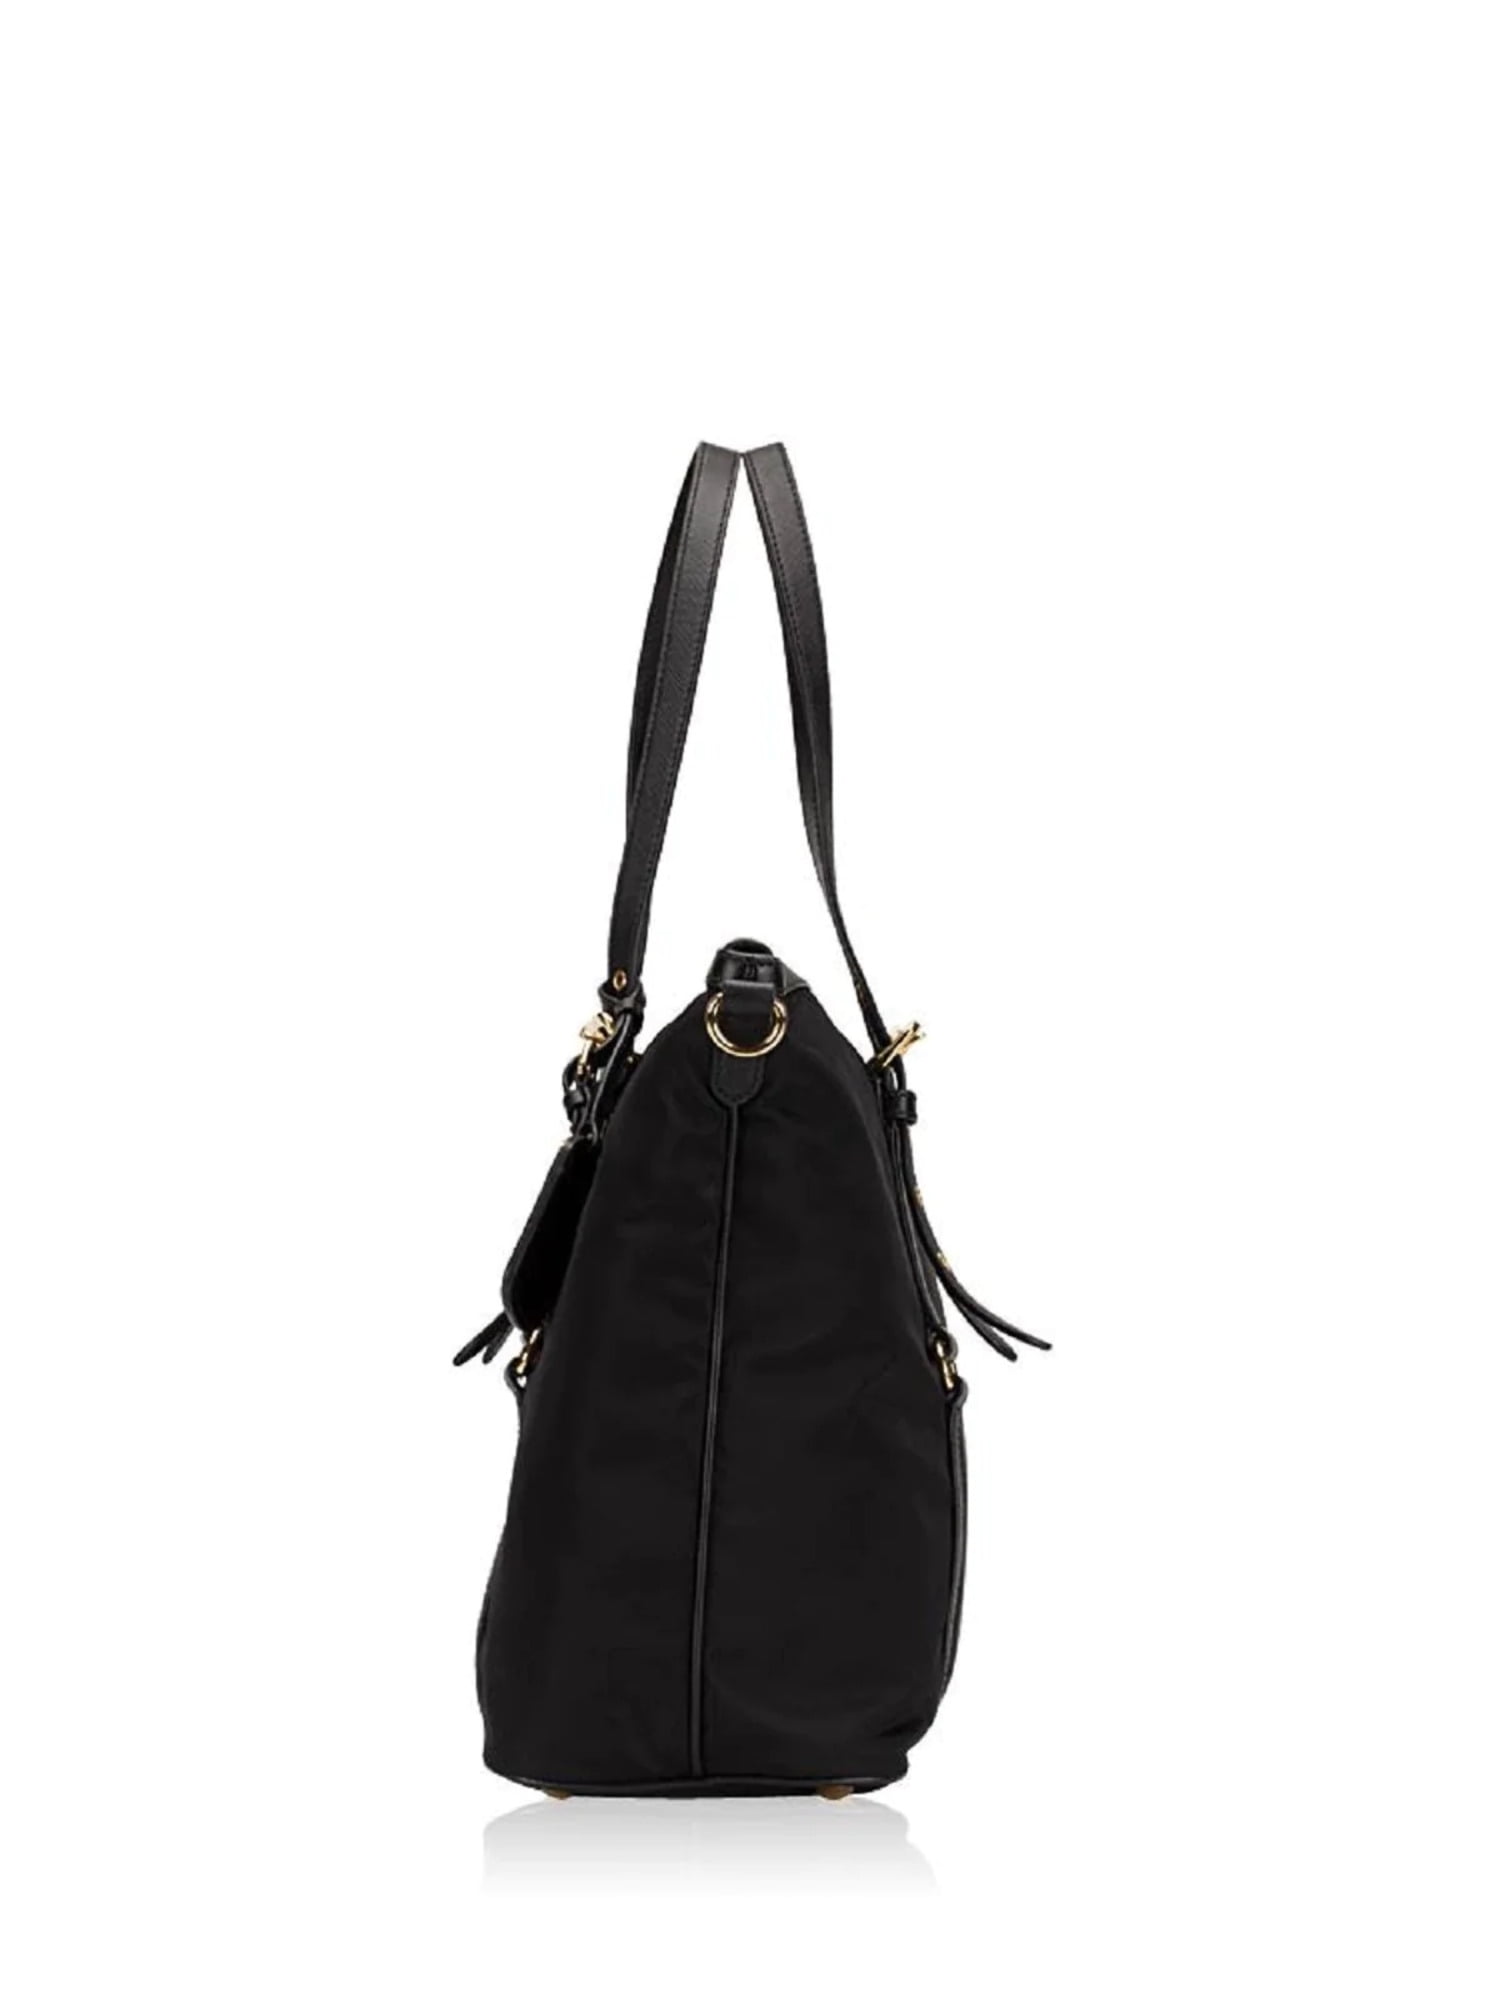  Prada Tessuto Black Nylon Leather Trim Shopping Tote Handbag  1BG253 : Clothing, Shoes & Jewelry